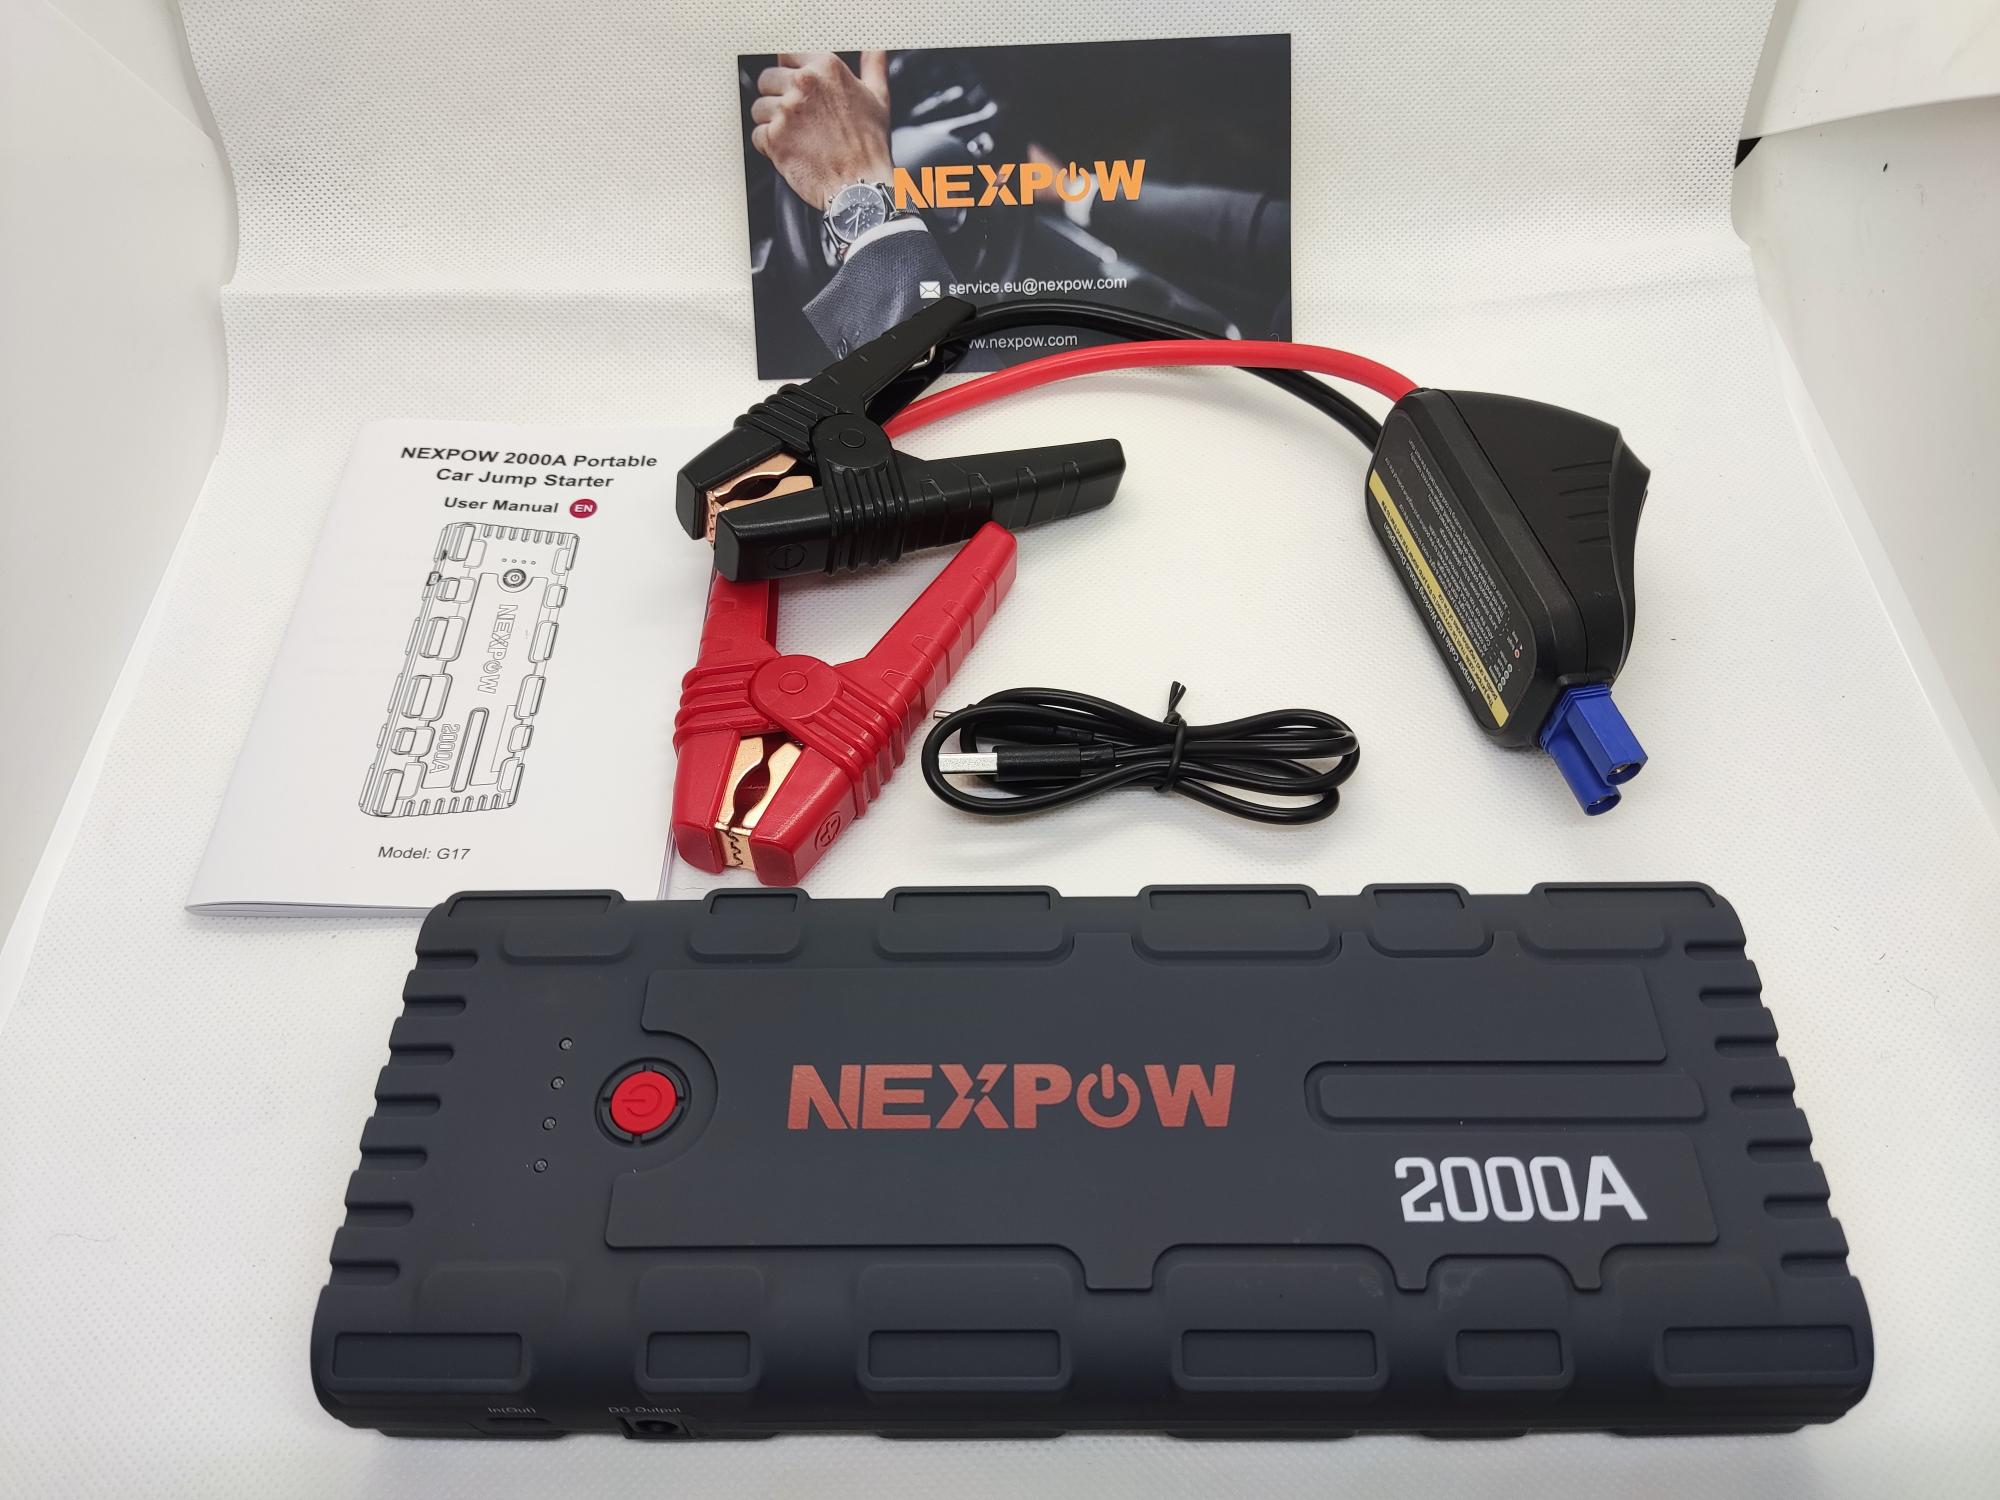 Nexpow Auto Starthilfe Powerbank Test - sicher durch den Winter